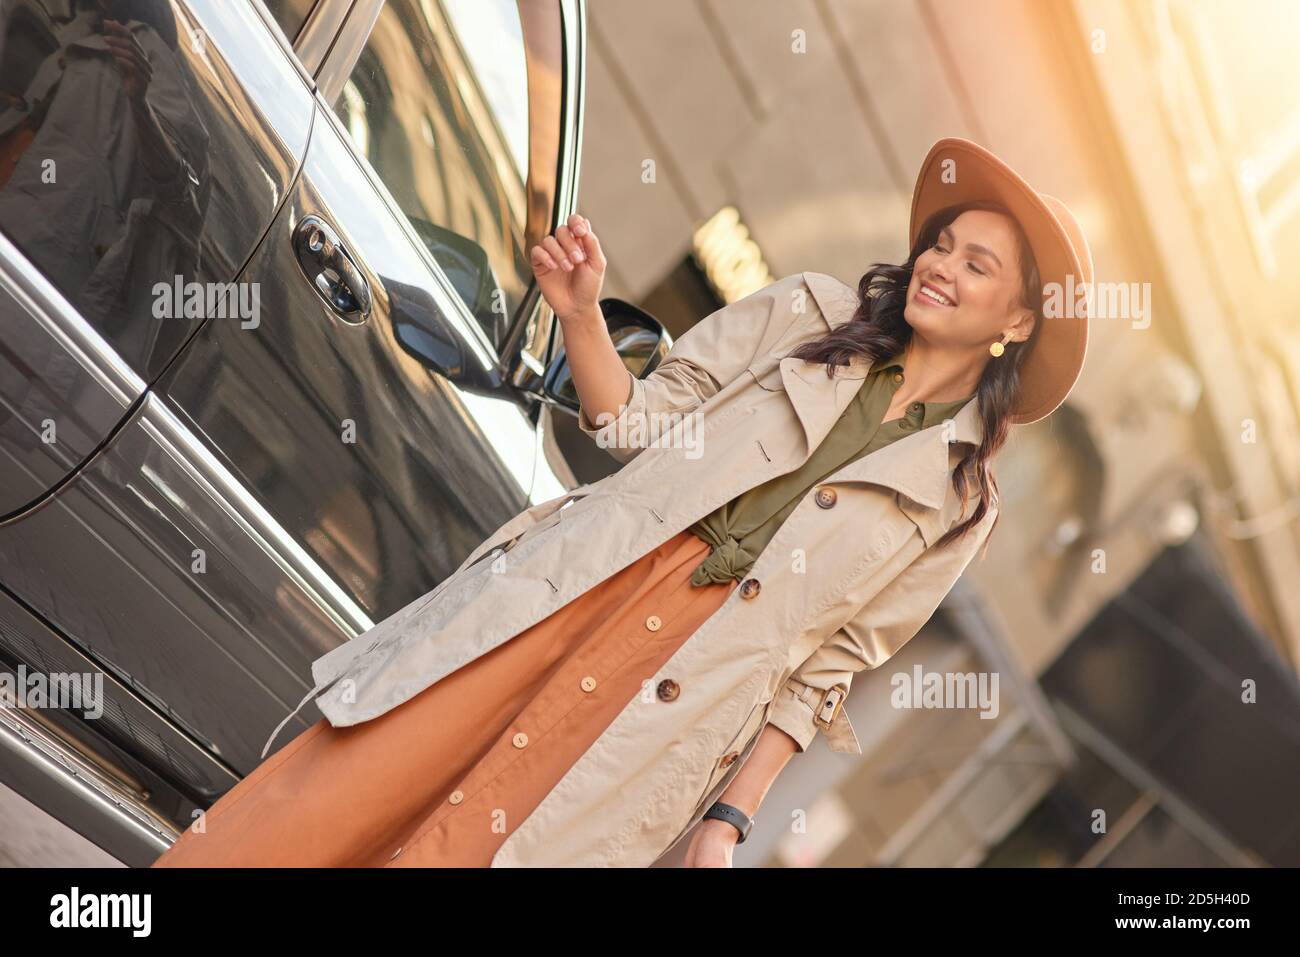 Junge glückliche stilvolle Frau mit Einkaufstaschen, die beiseite schauen und lächeln, während sie in der Nähe eines schwarzen Luxuswagens auf der Straße der Stadt steht. Menschen Lifestyle, Mode-Konzept Stockfoto